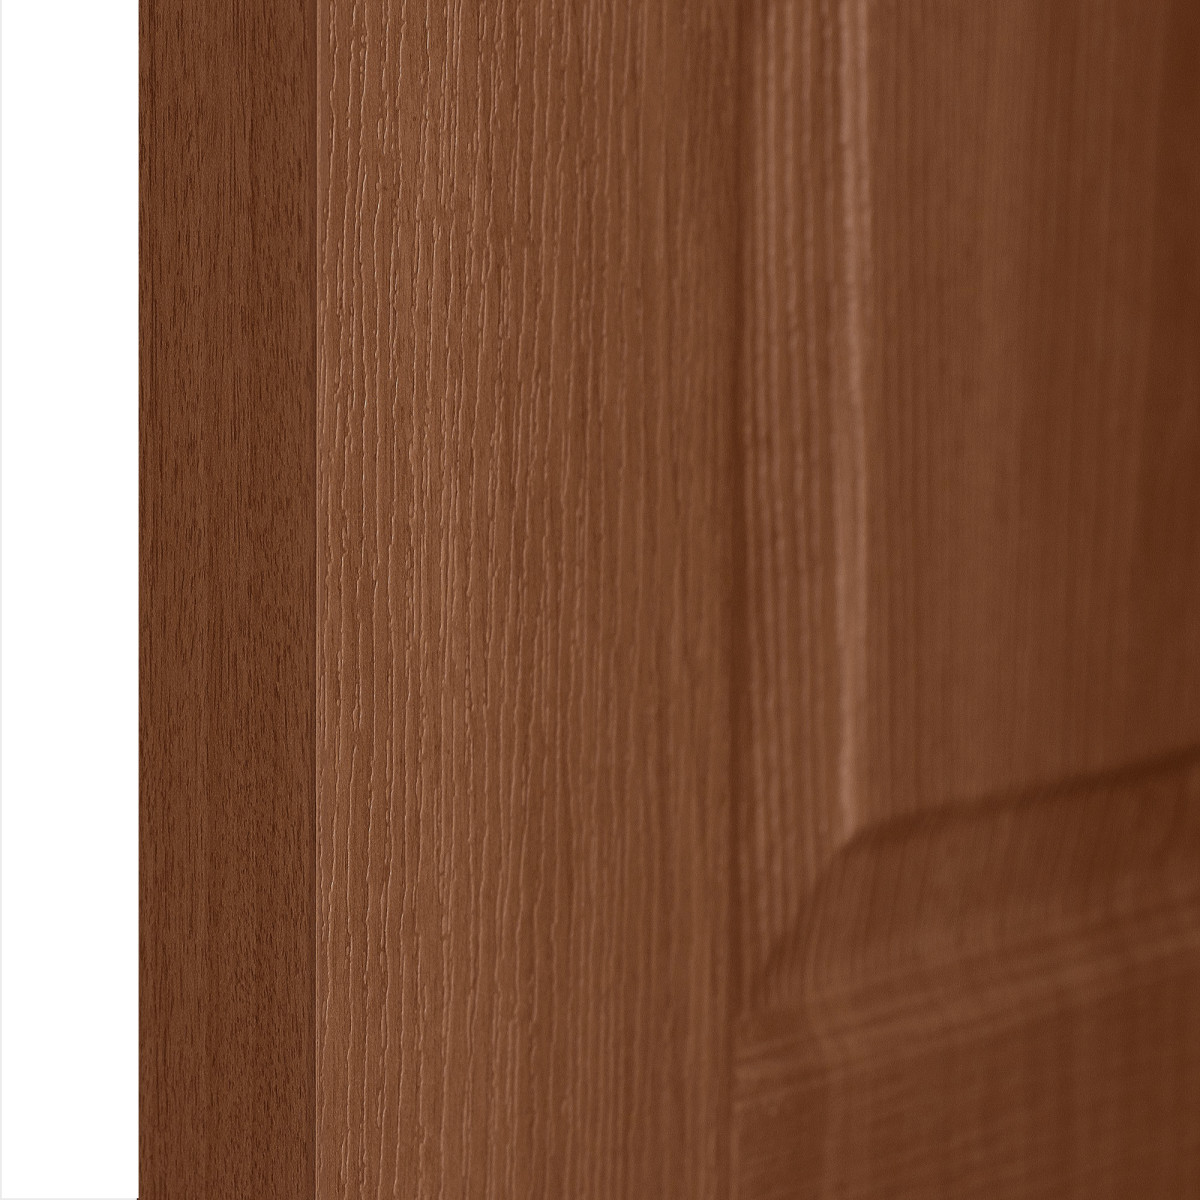 Дверь межкомнатная глухая ПВХ Антик 90x200 см цвет итальянский орех